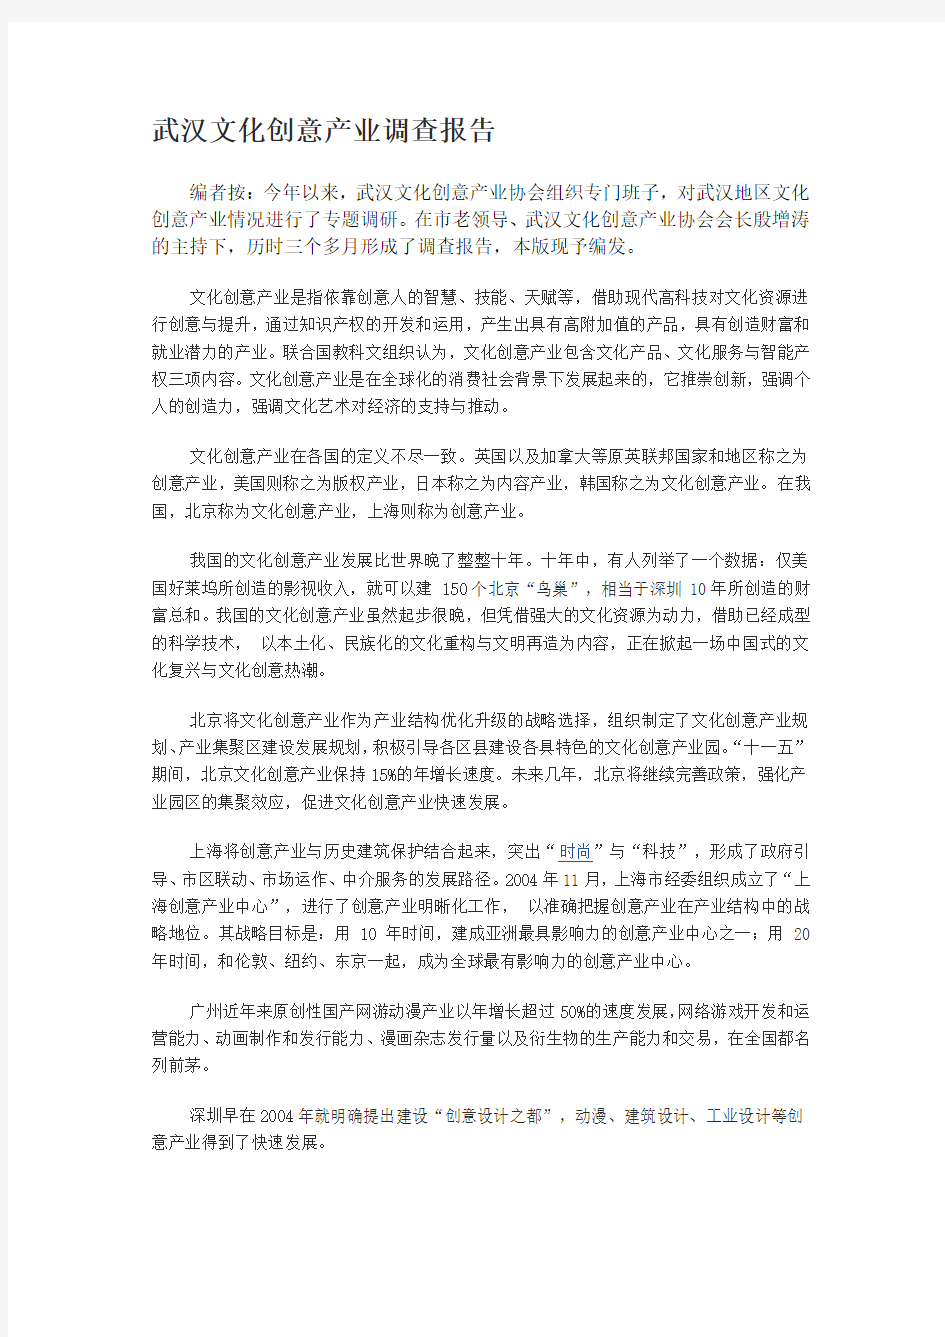 武汉文化创意产业调查报告